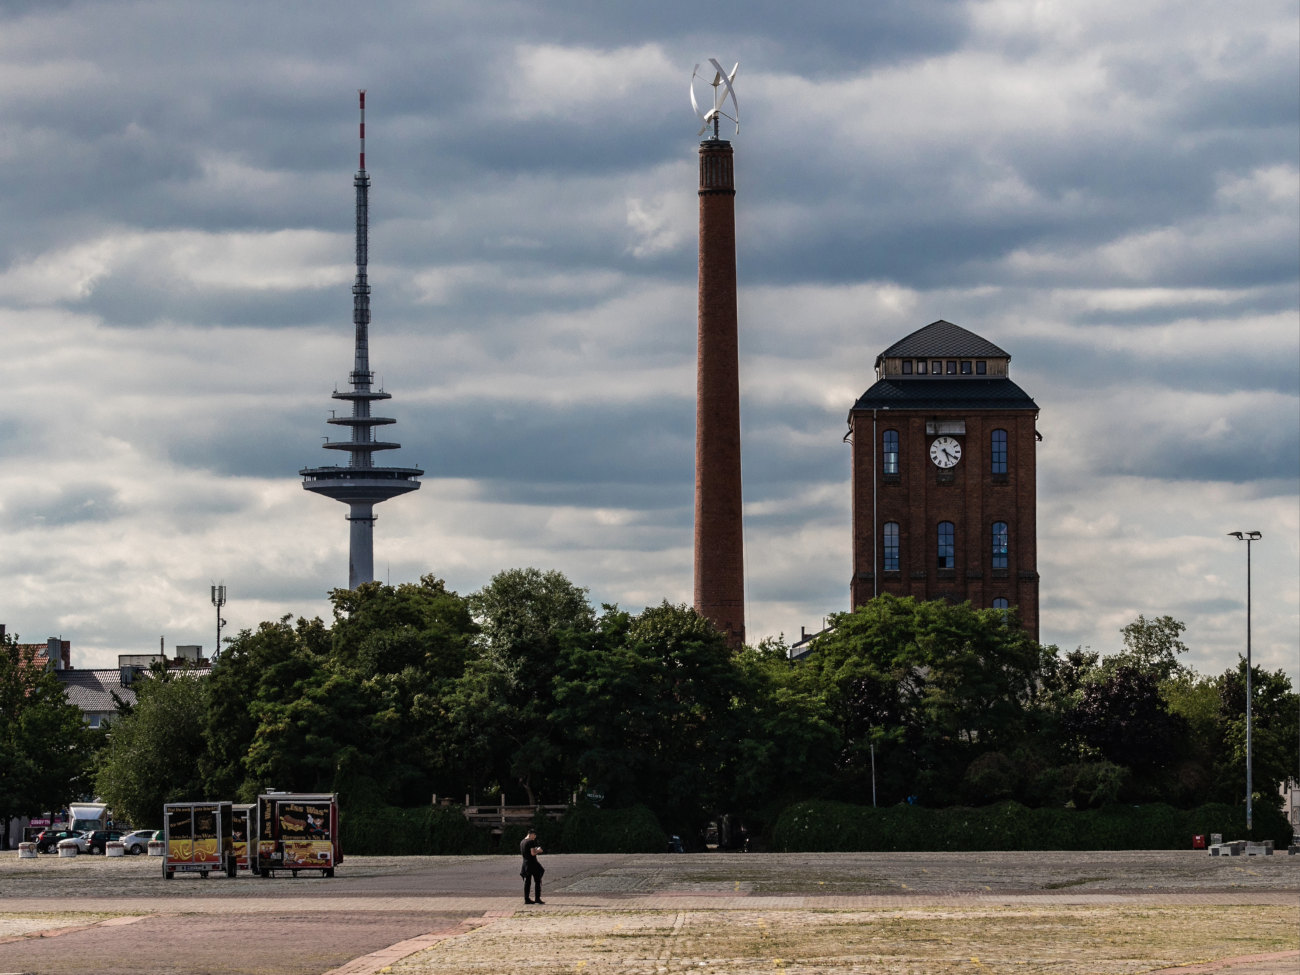 Ein Foto vom Schlachthof in Findorff mit dem Waller Fernsehturm im Hintergrund.